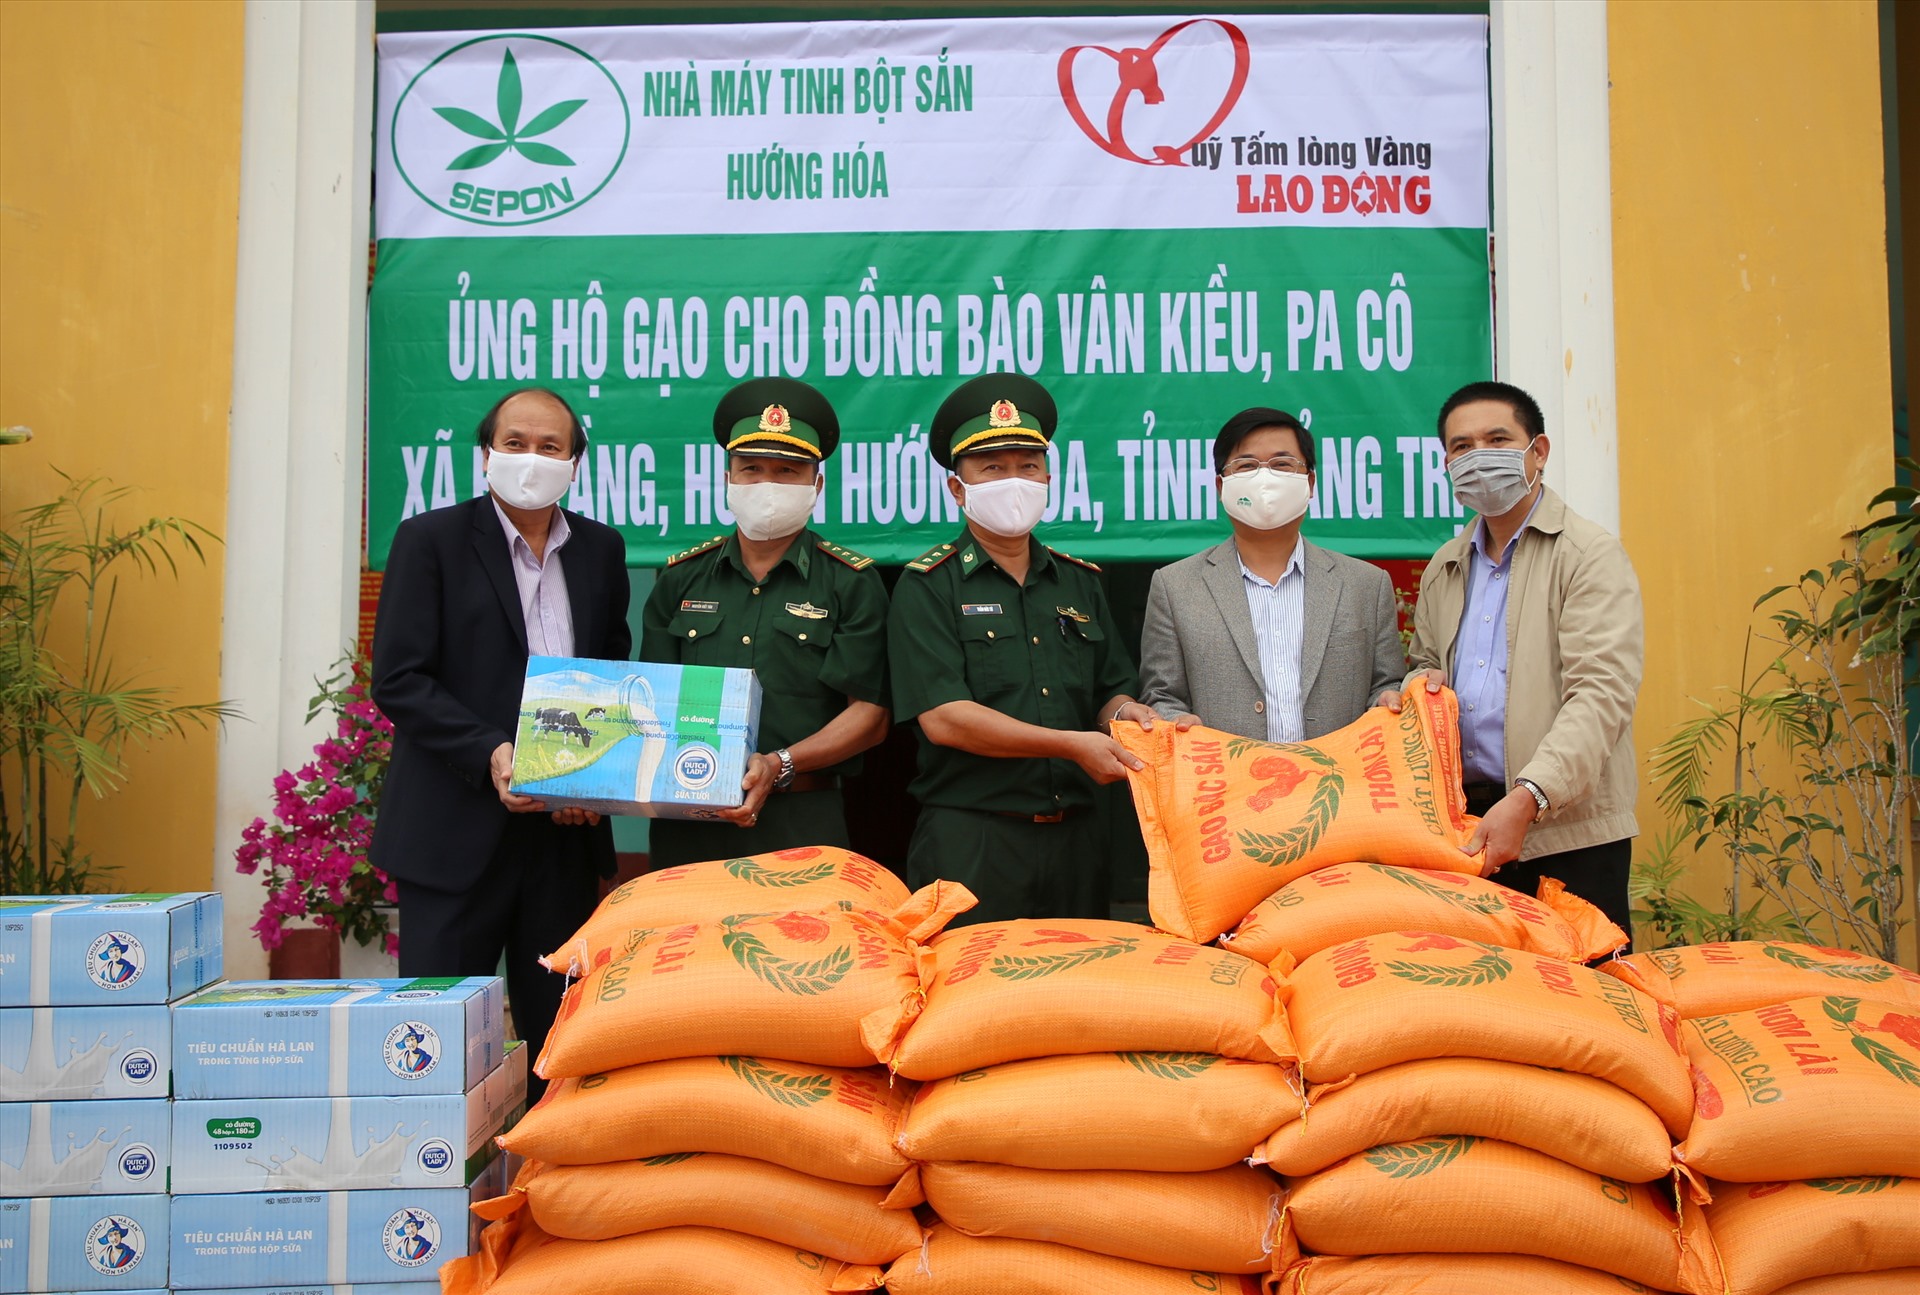 Quỹ Tấm lòng Vàng Lao Động phối hợp với Nhà máy tinh bột sắn Hướng Hóa trao tặng 1 tấn gạo cho Đồn Biên phòng Ba Tầng. Ảnh: Hưng Thơ.